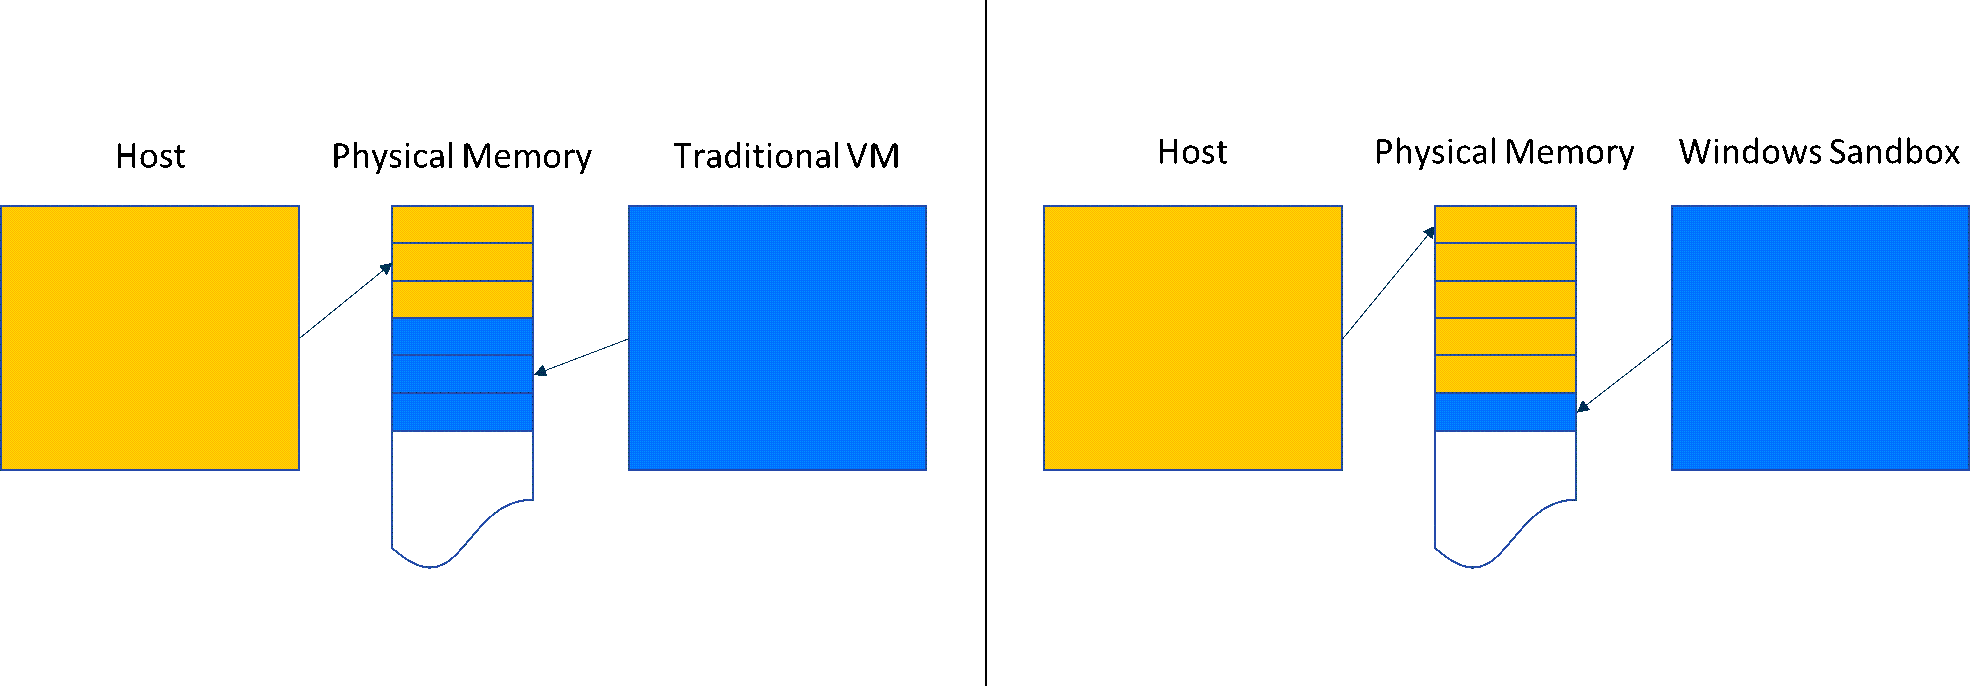 图表比较了Windows 沙盒中的内存共享与传统 VM。